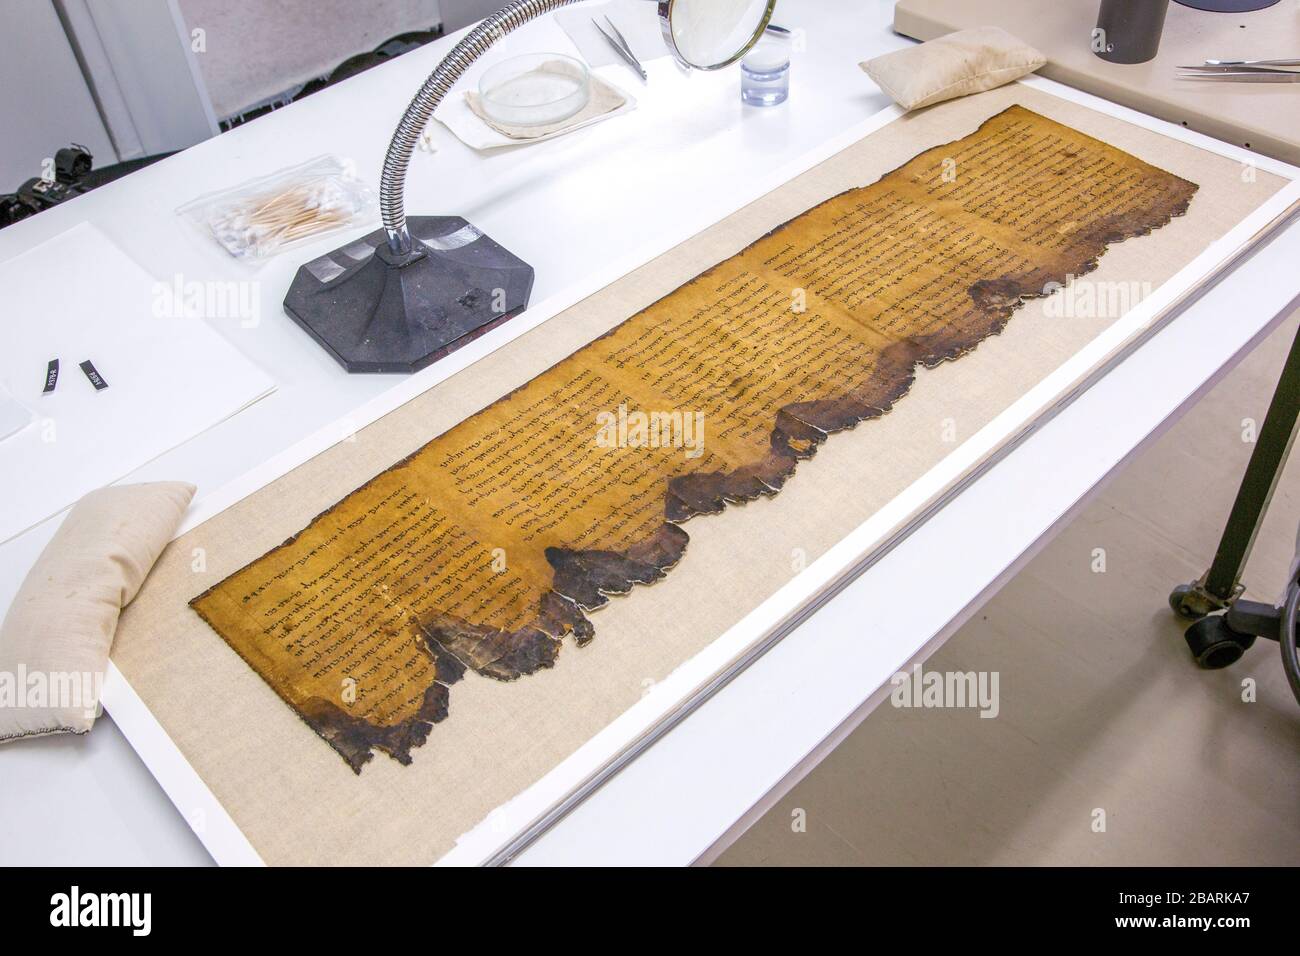 Des manuscrits de la mer morte dans le sanctuaire du livre du Musée israélien Jérusalem, Israël Banque D'Images